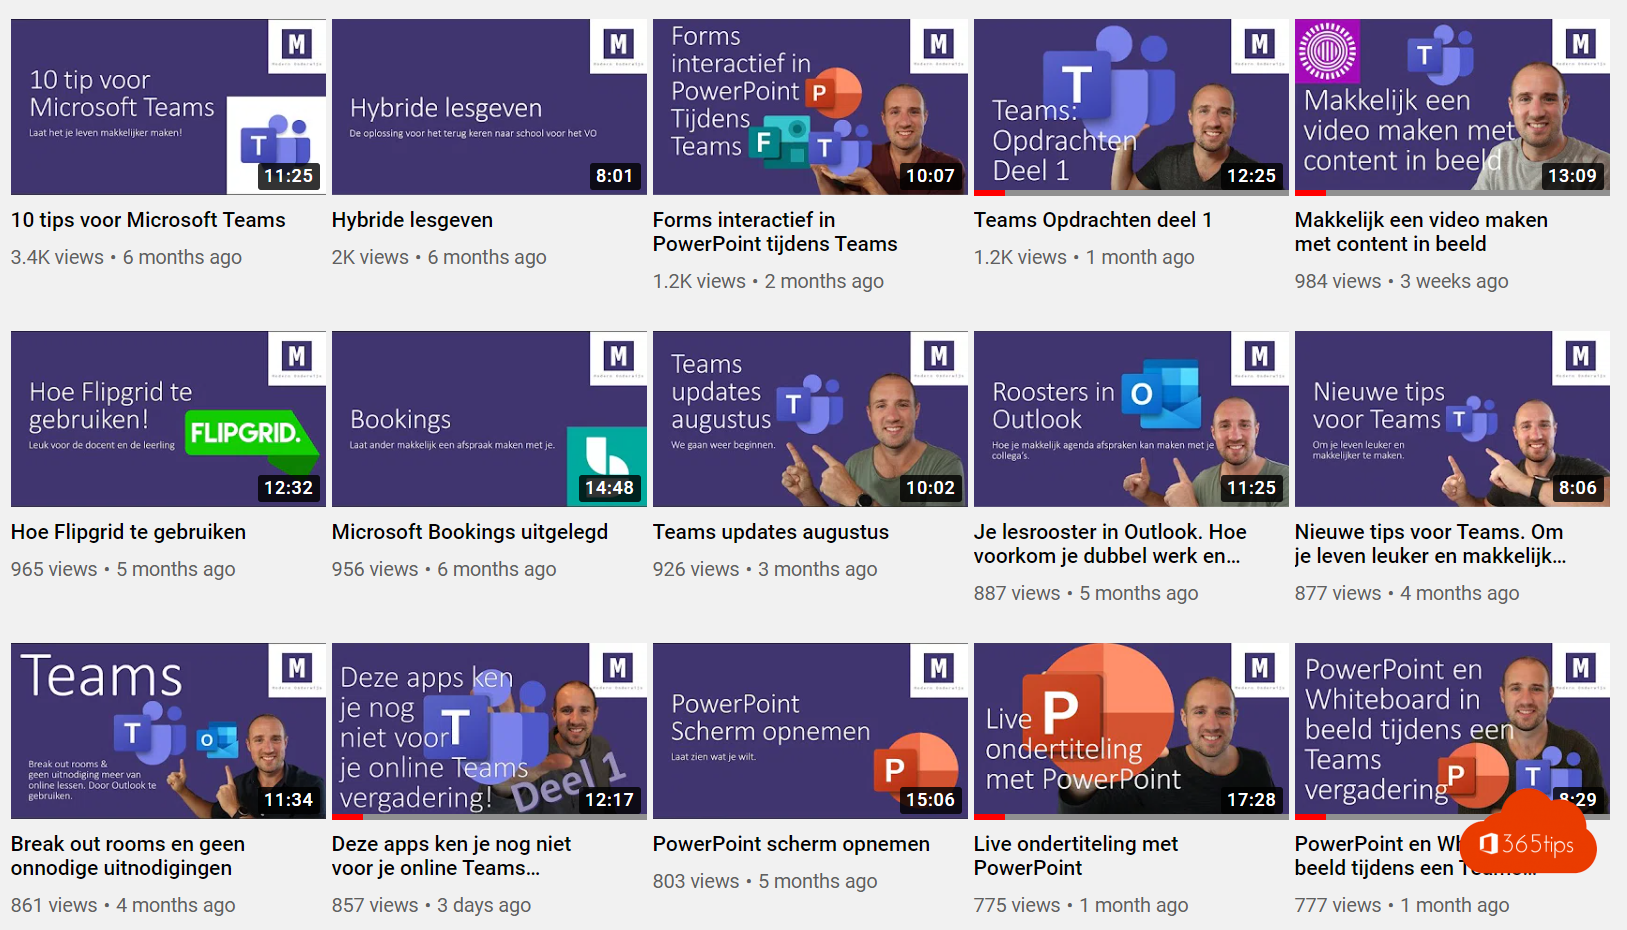 Moderne Bildung auf YouTube - Unterricht über Microsoft Teams